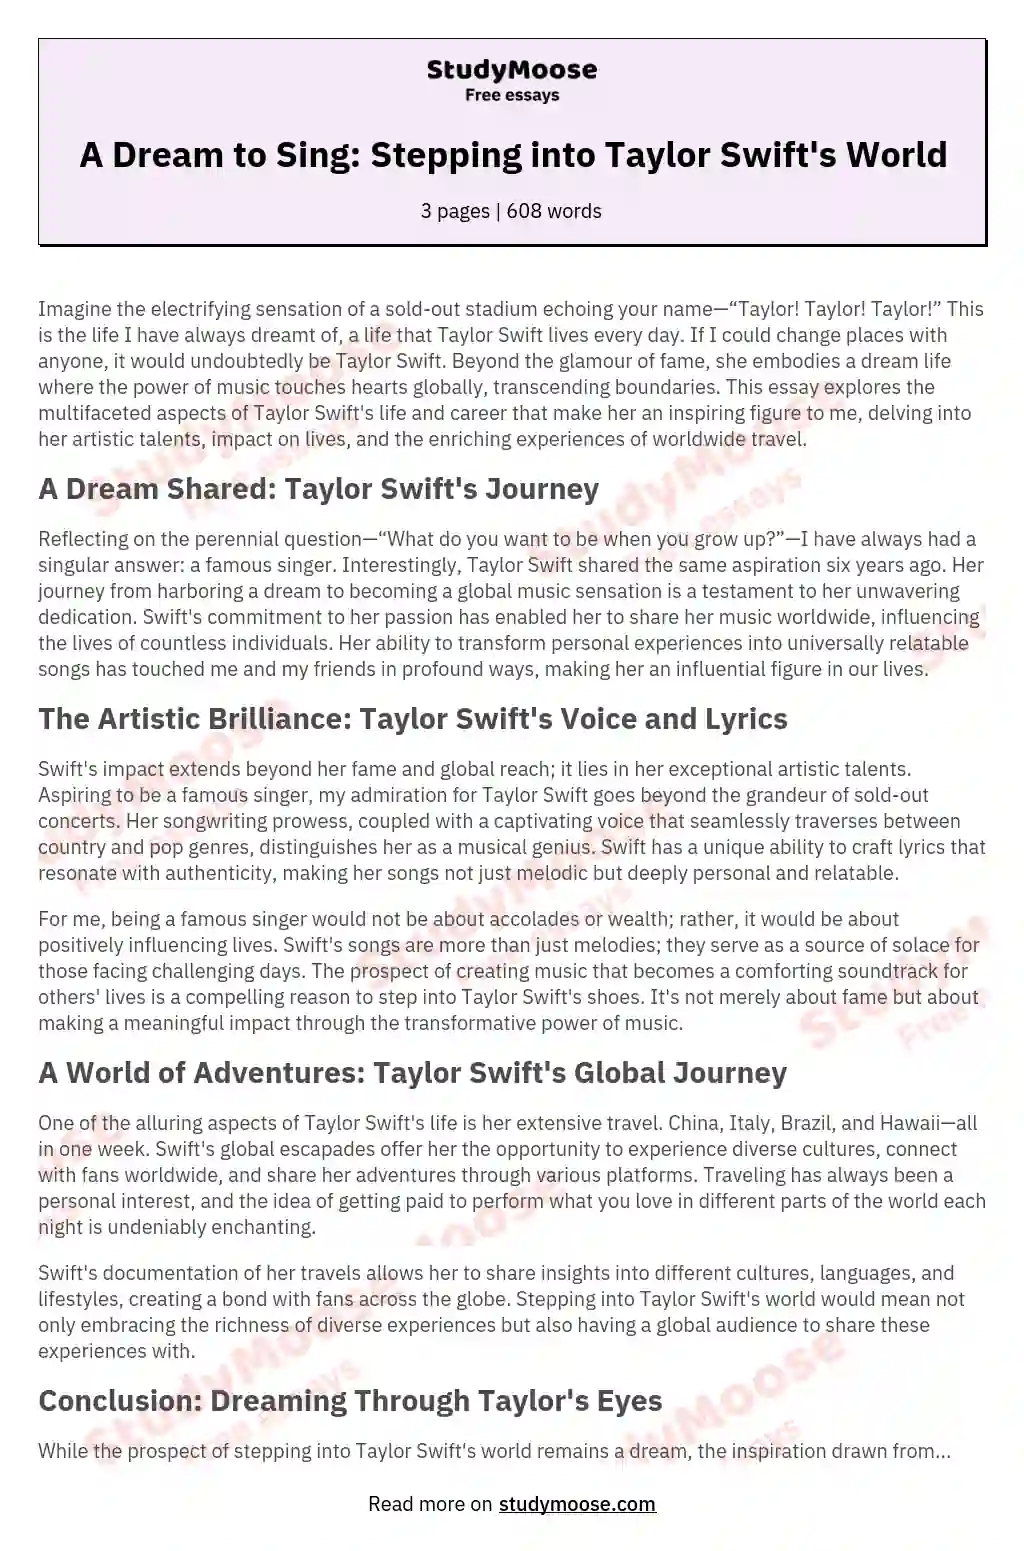 descriptive essay about taylor swift